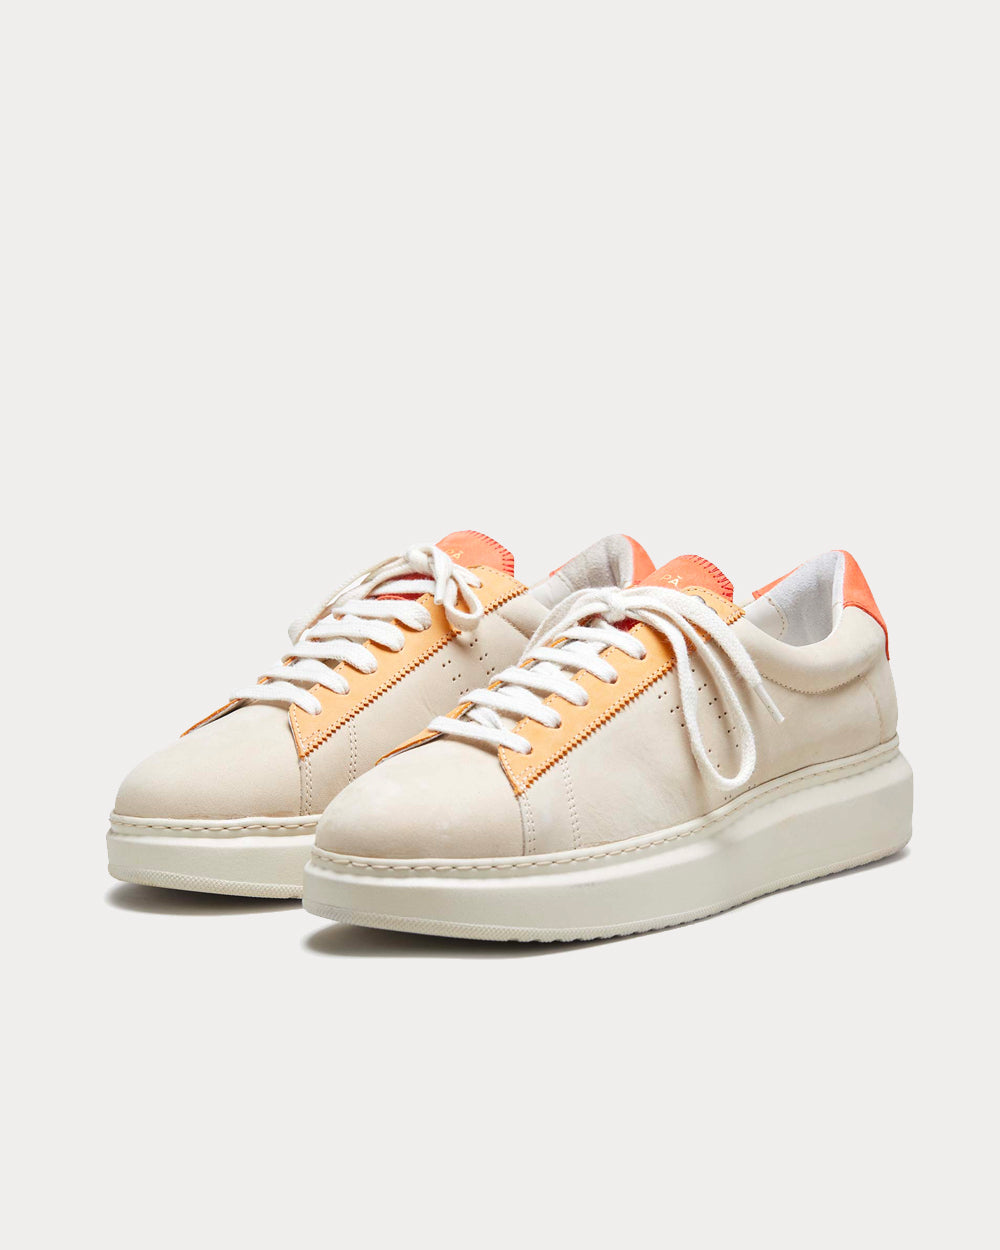 Zespa - ZSP4VH Nubuck Craie / Corail / Orange Low Top Sneakers